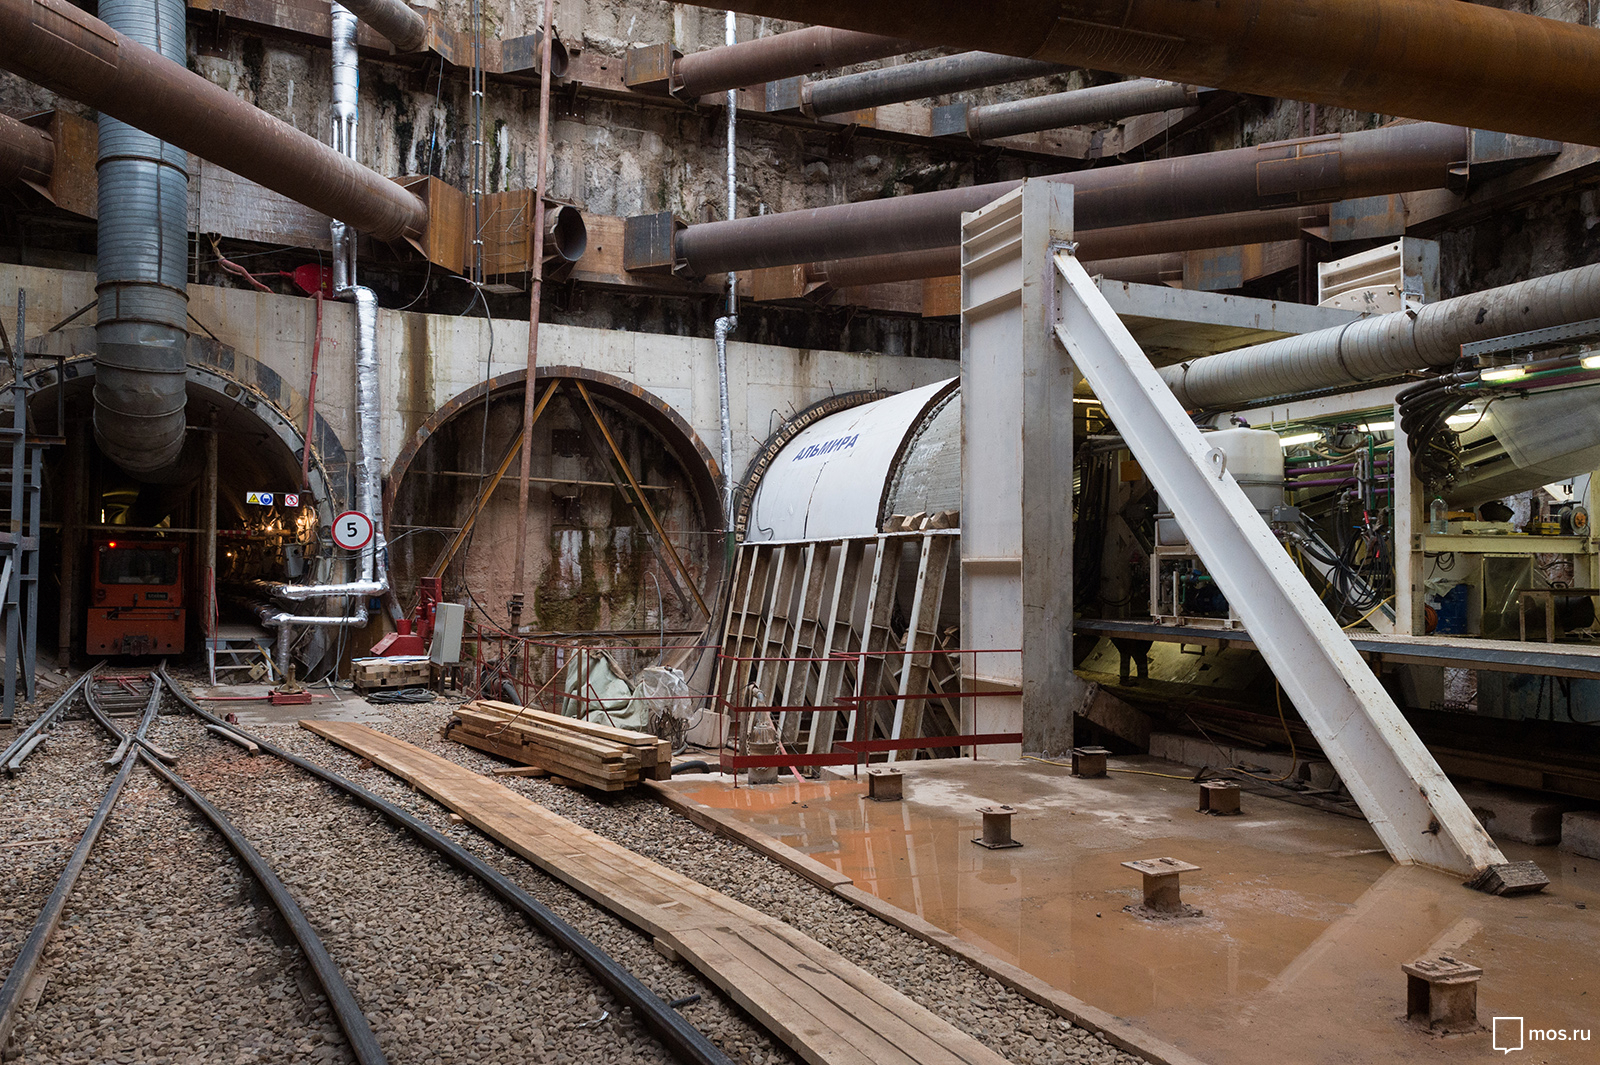 Началась проходка тоннеля Большого кольца метро до станции "Авиамоторная"